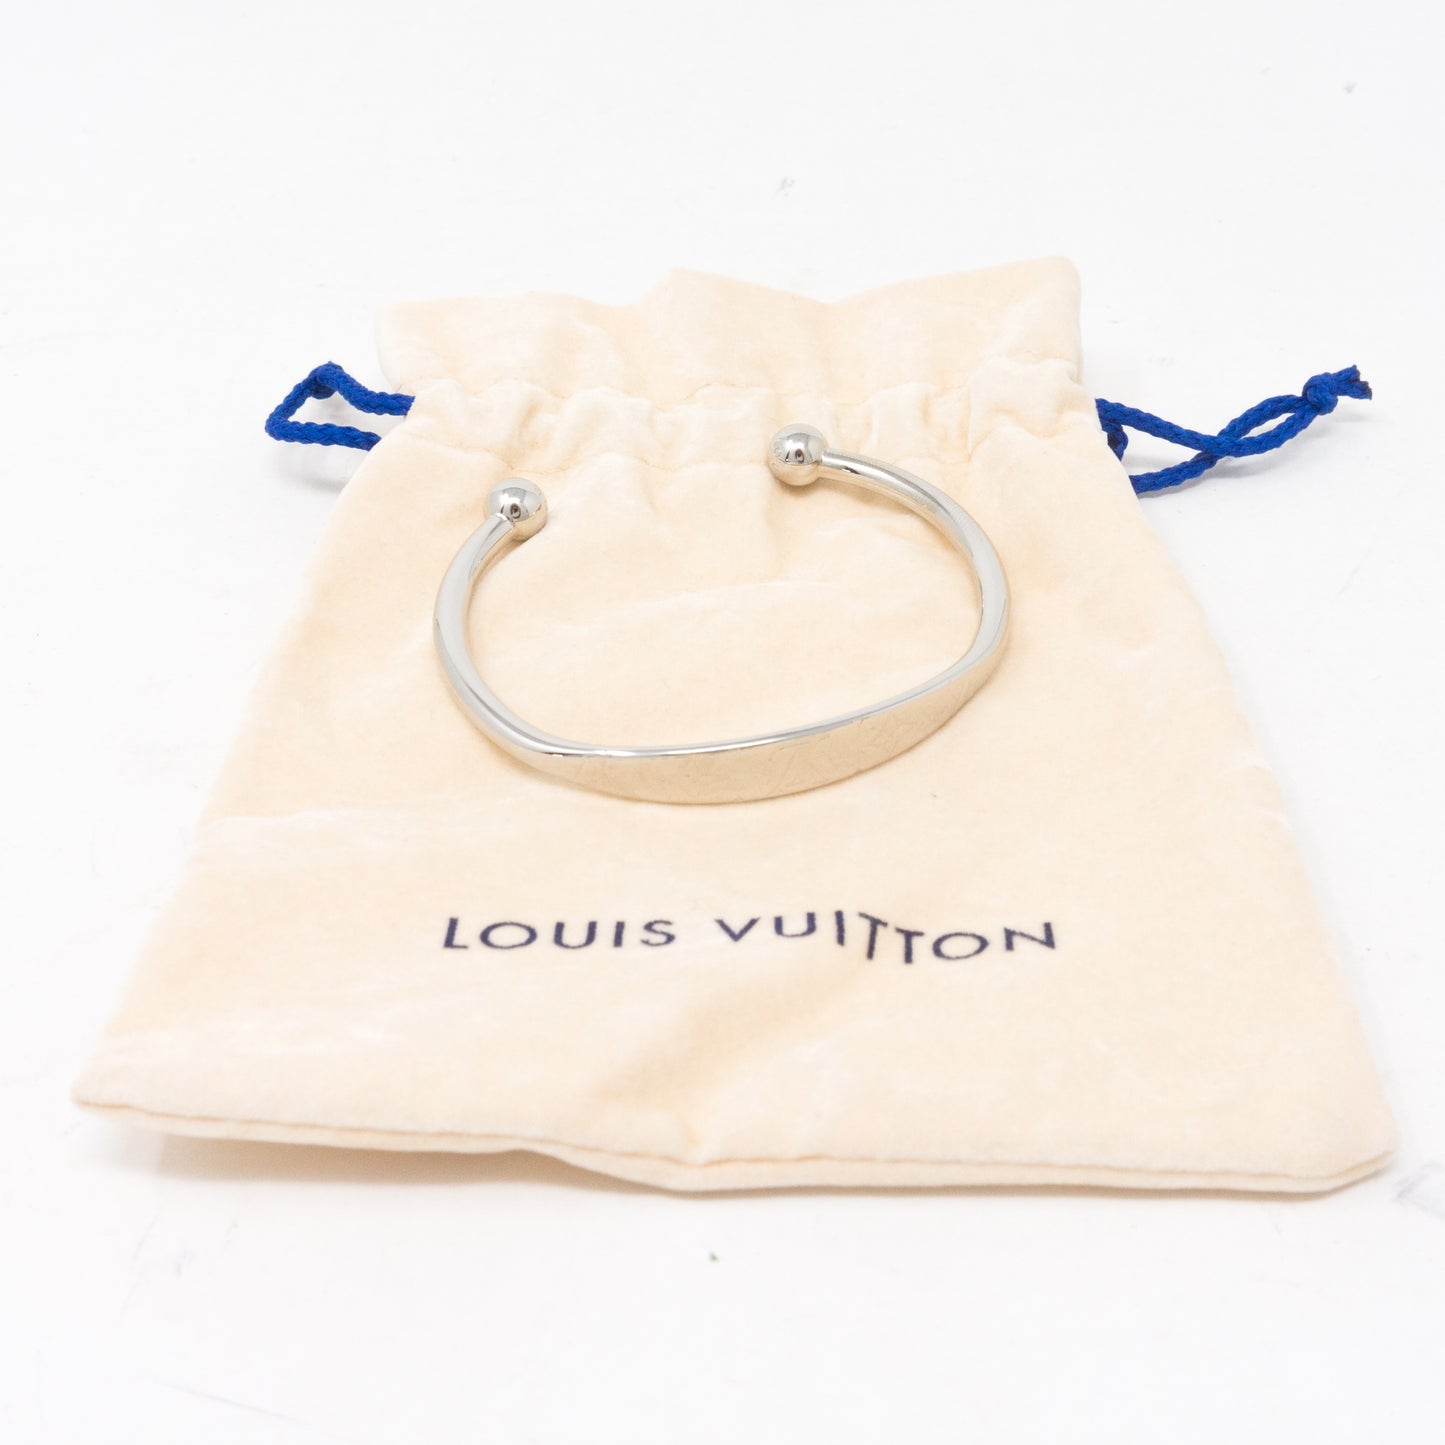 Shop Louis Vuitton Monogram jonc (M64839, M64840) by ☆LuceaT☆